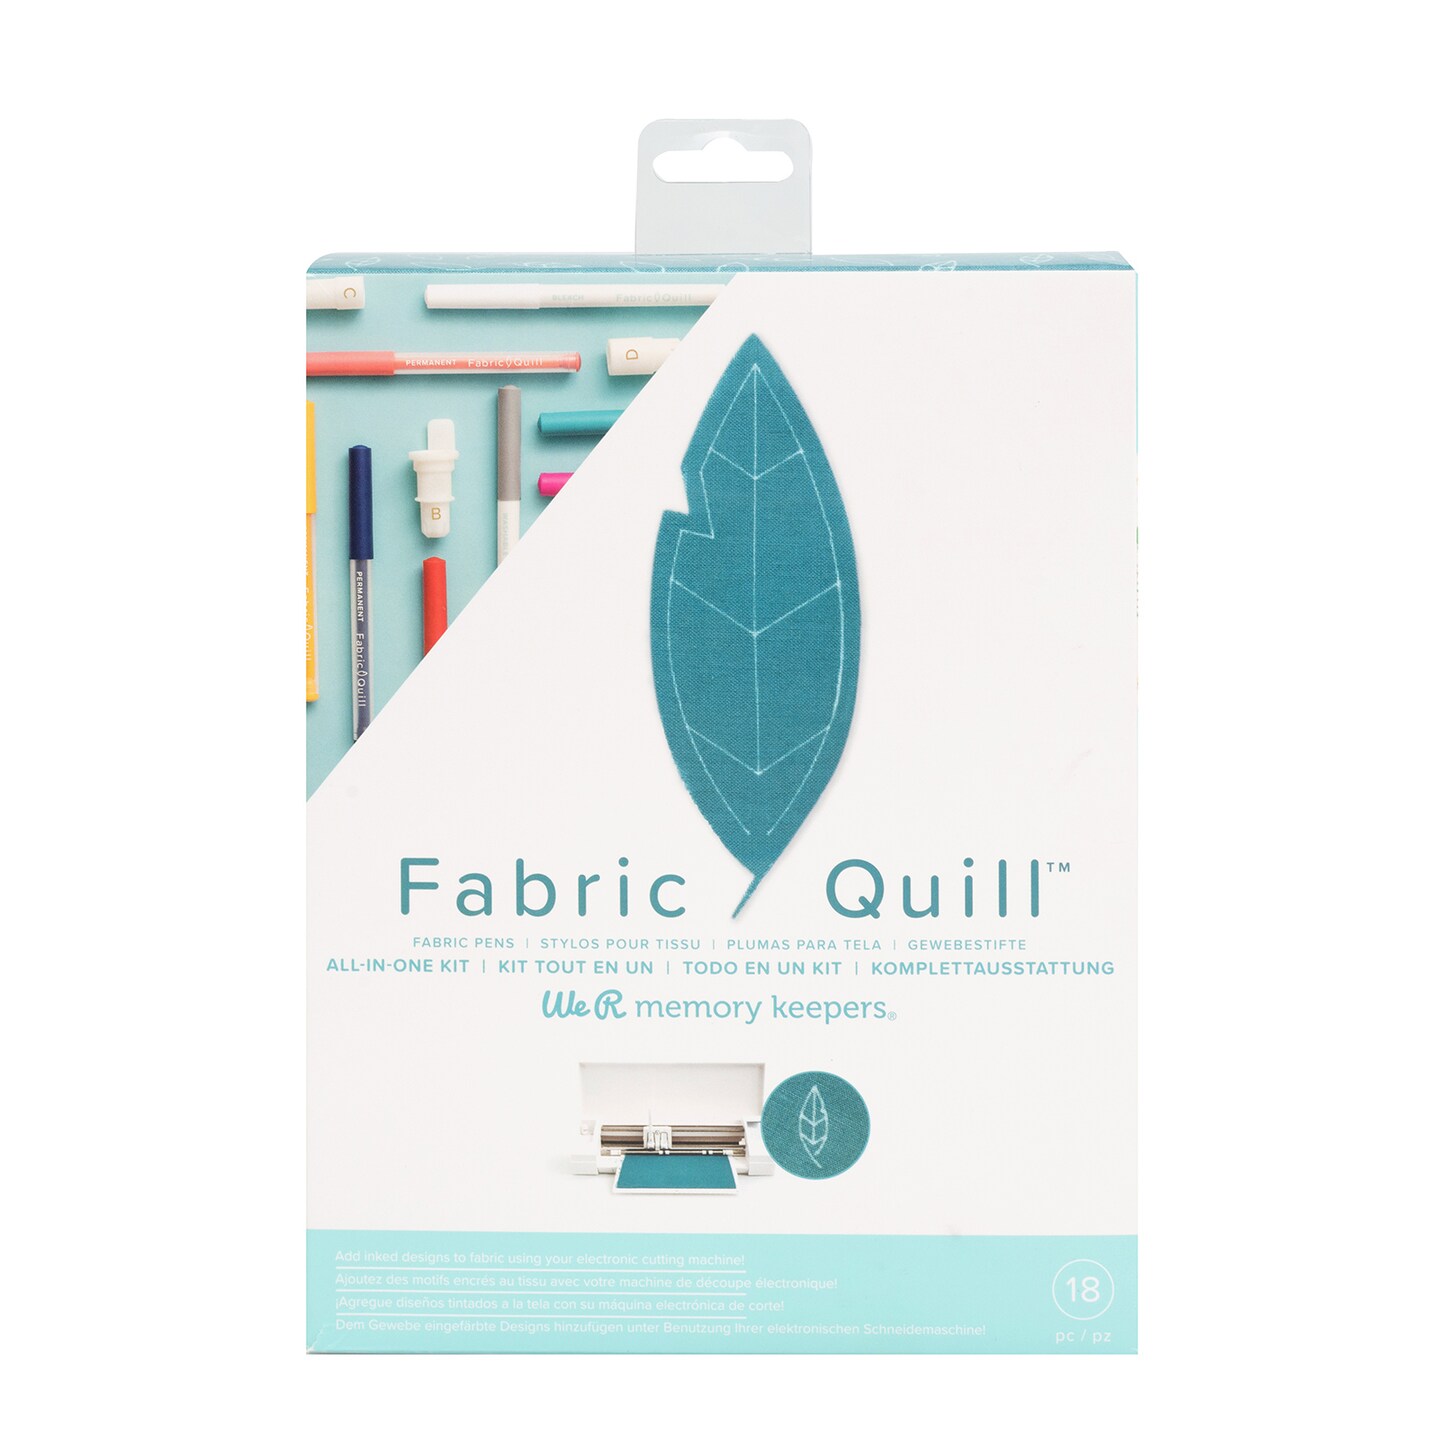 White Puffy Velvet Fabric Paint Marker by Make Market®